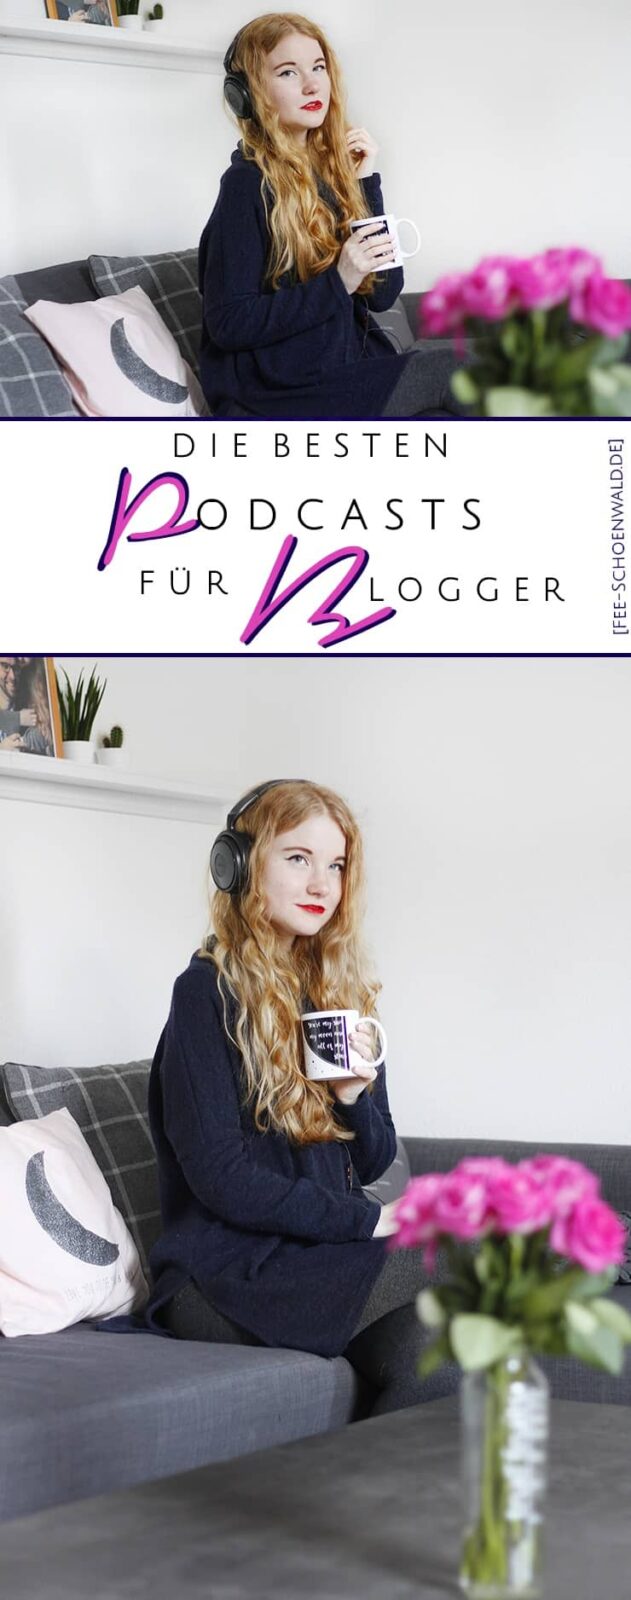 Die besten Podcasts für Blogger